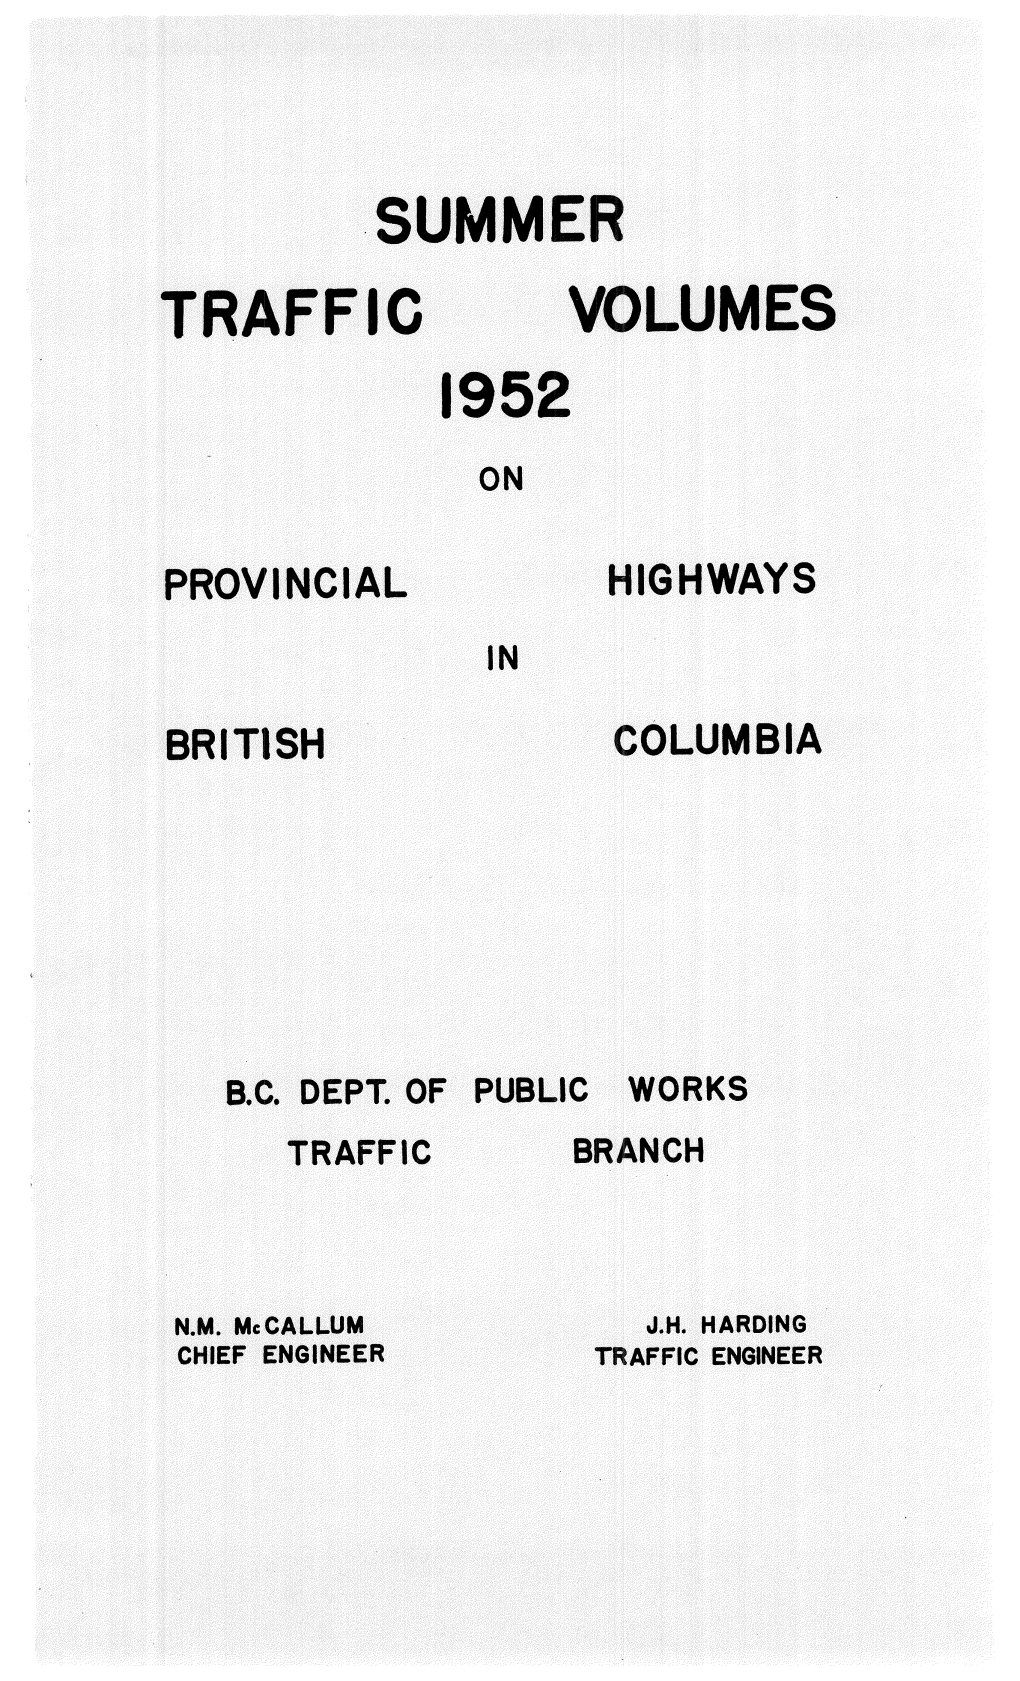 1952 Summer Traffic Volumes